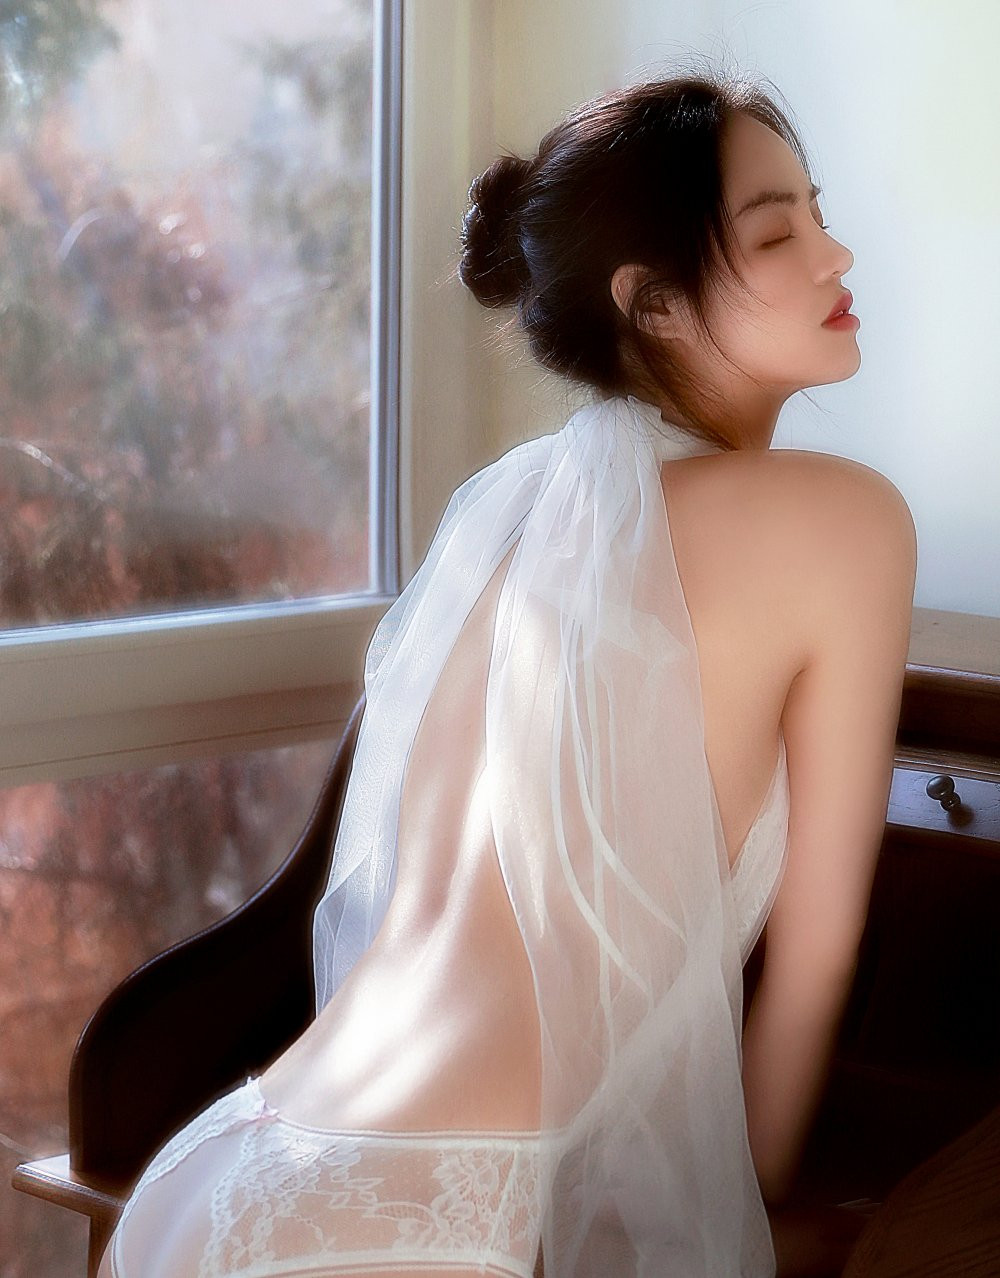 Người mẫu Trung Quốc mặc chiếc váy không kéo khóa thu hút sự chú ý - 6